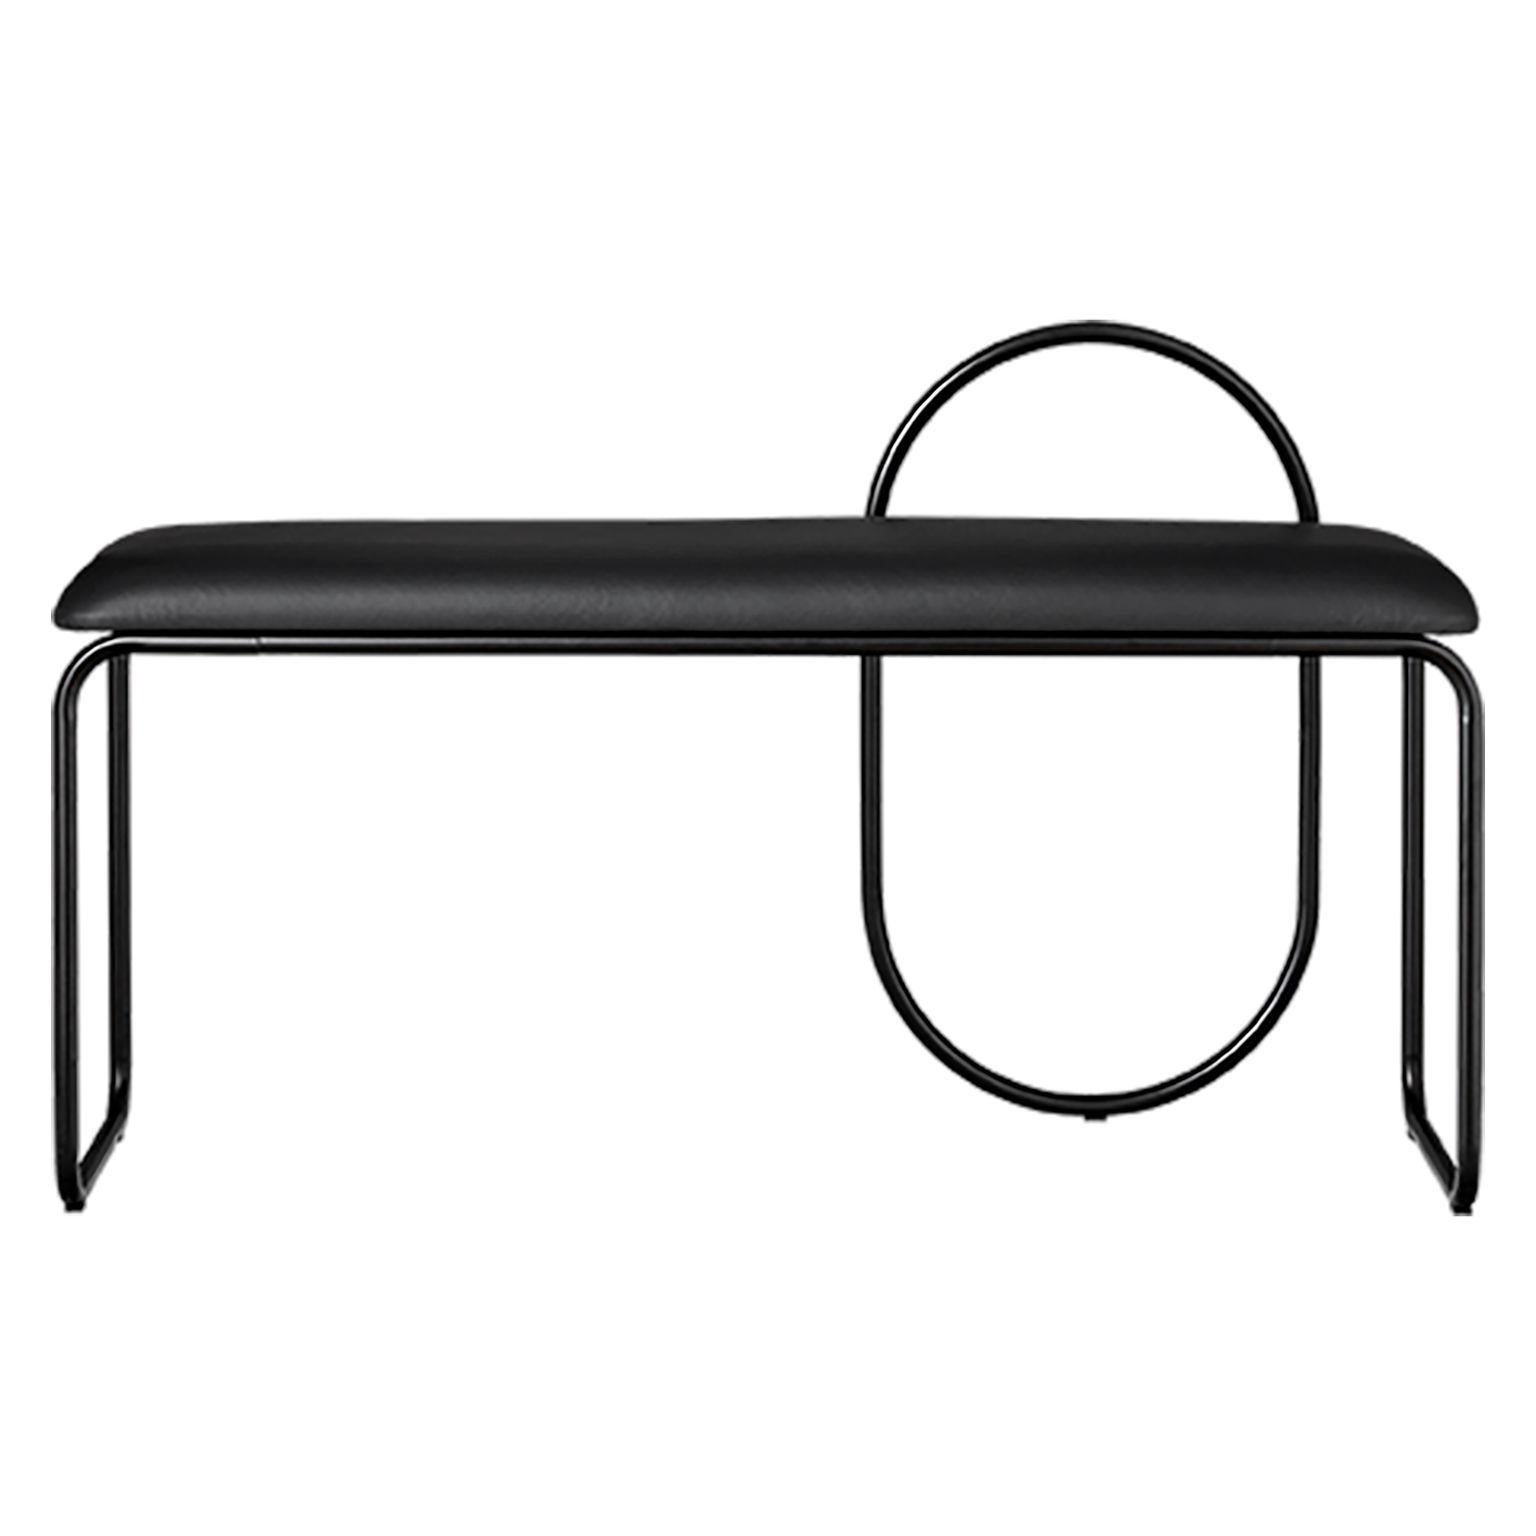 Banc minimaliste en cuir noir
Dimensions : L 110 x L 39 x H 68 cm
MATERIAL : Cuir noir, acier

La collection comprend des bancs, des chaises, des étagères et des miroirs dans une grande variété de tailles.